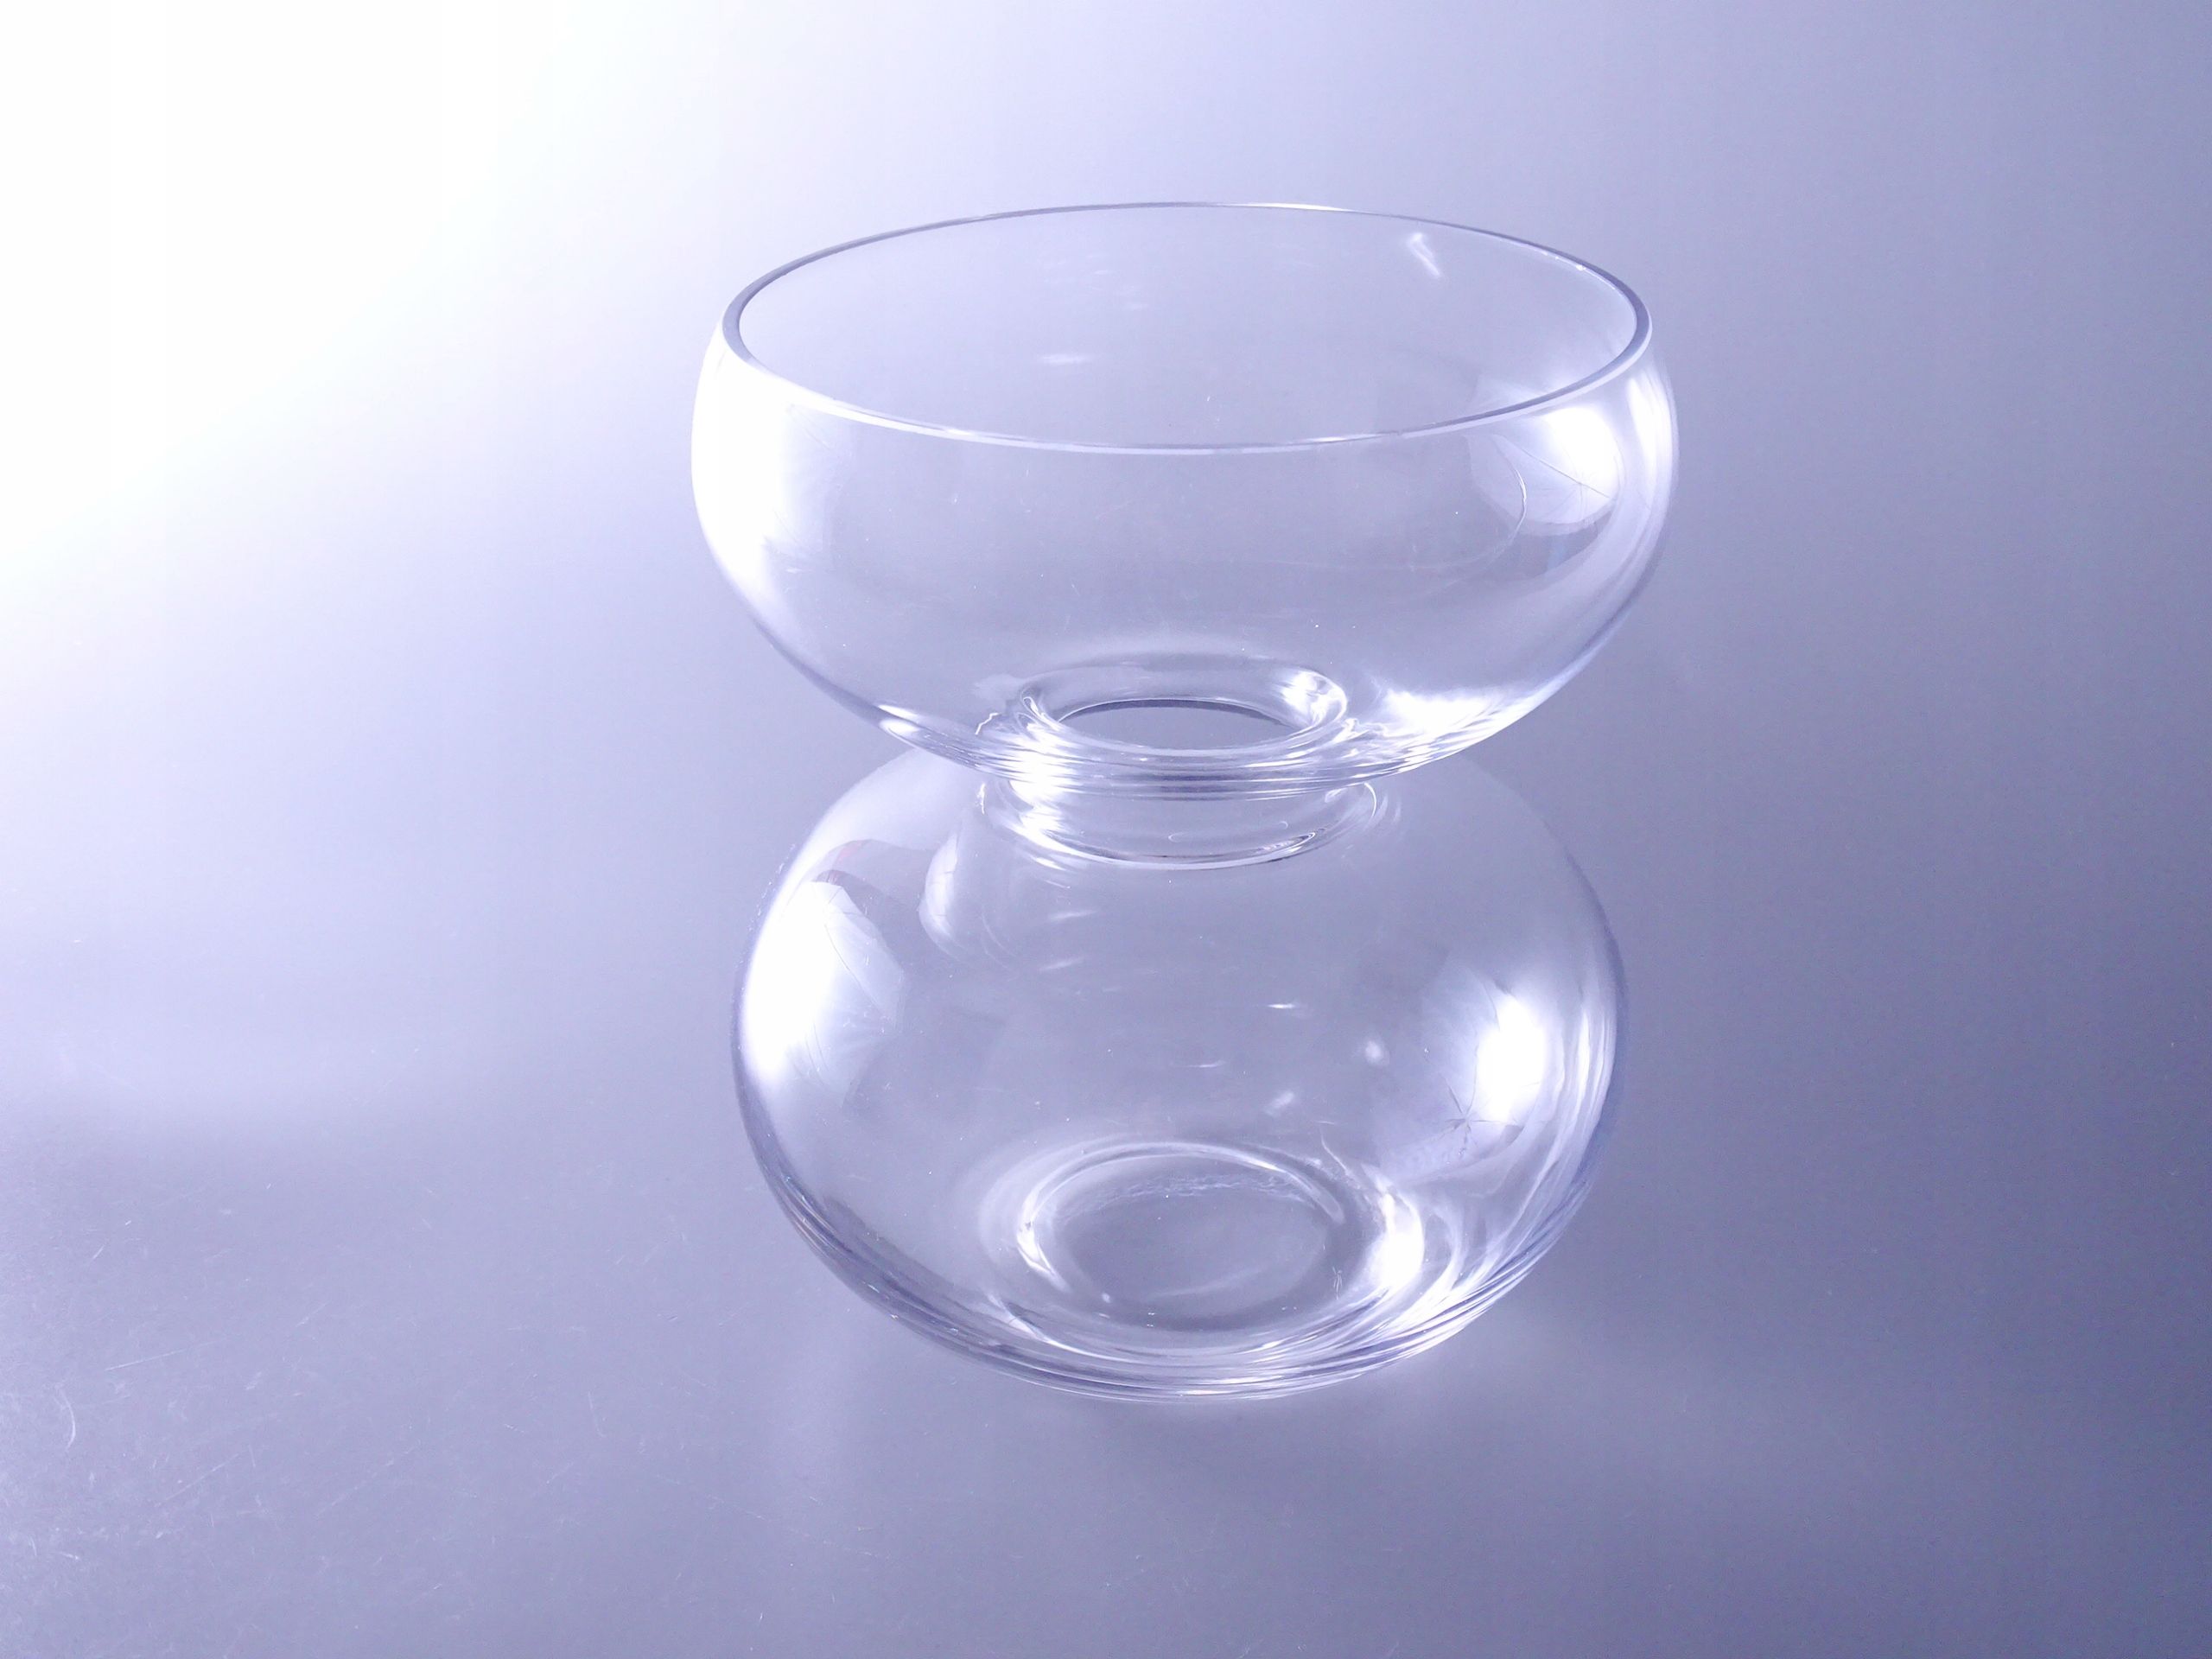 szklany dmuchany designerski wazon